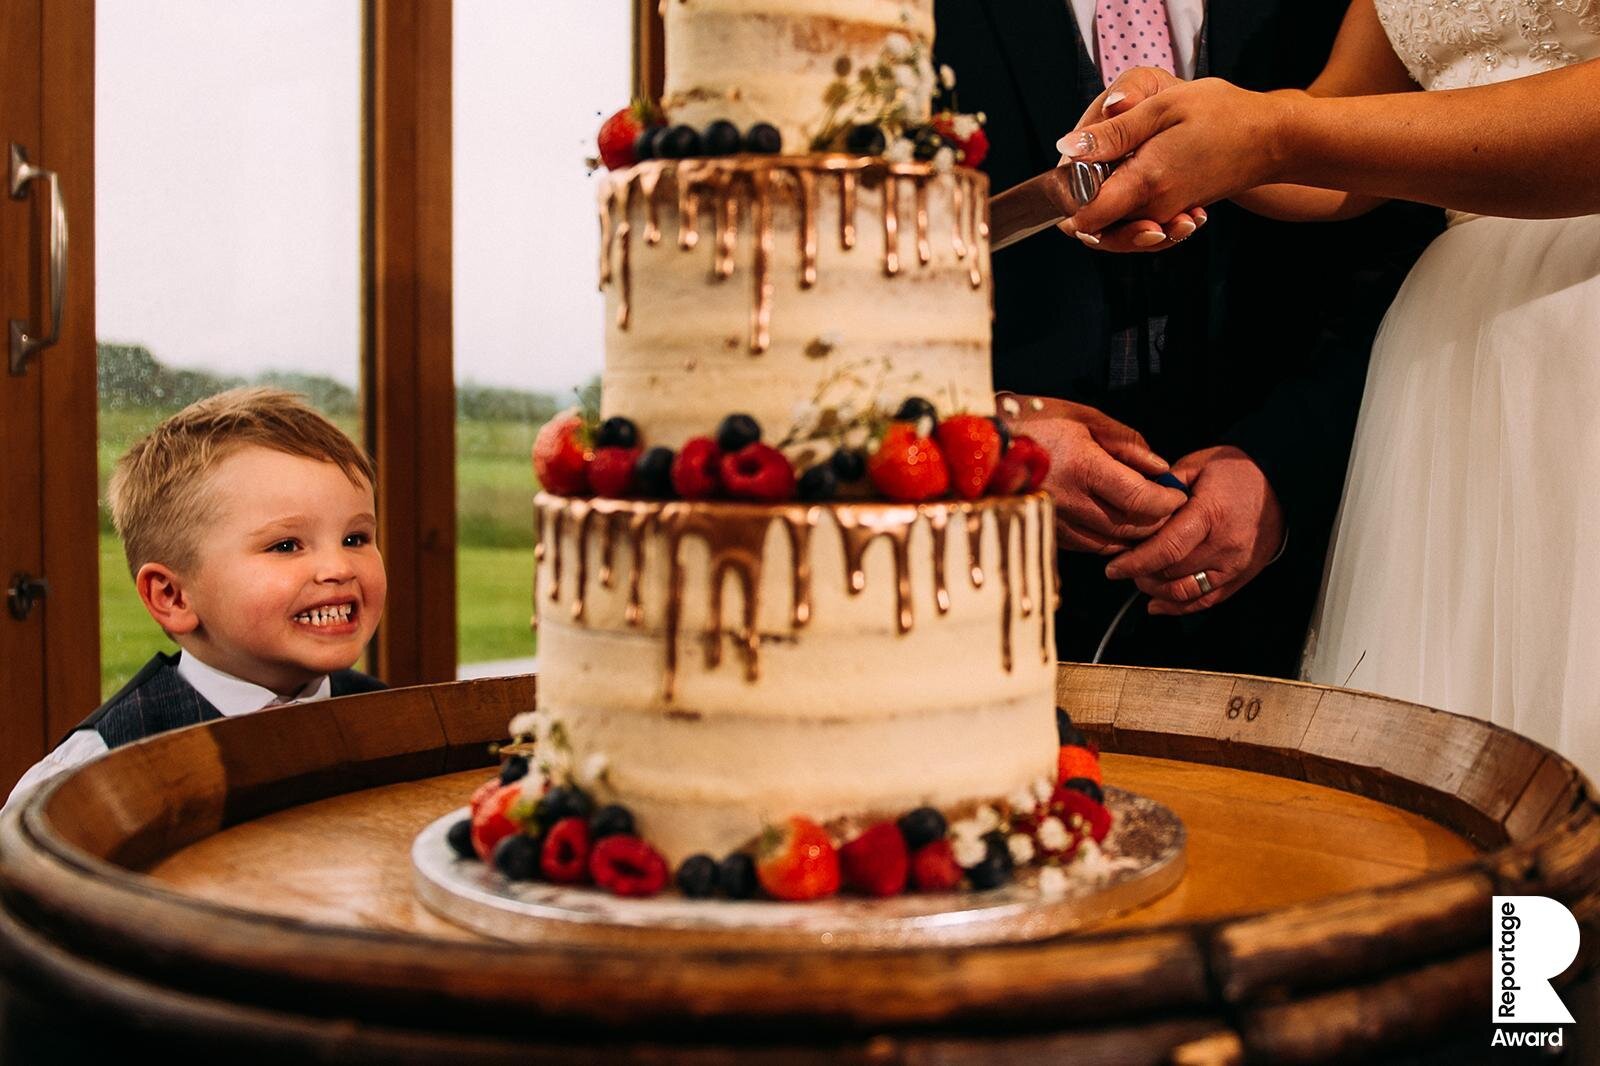  Boy smiling at cake 